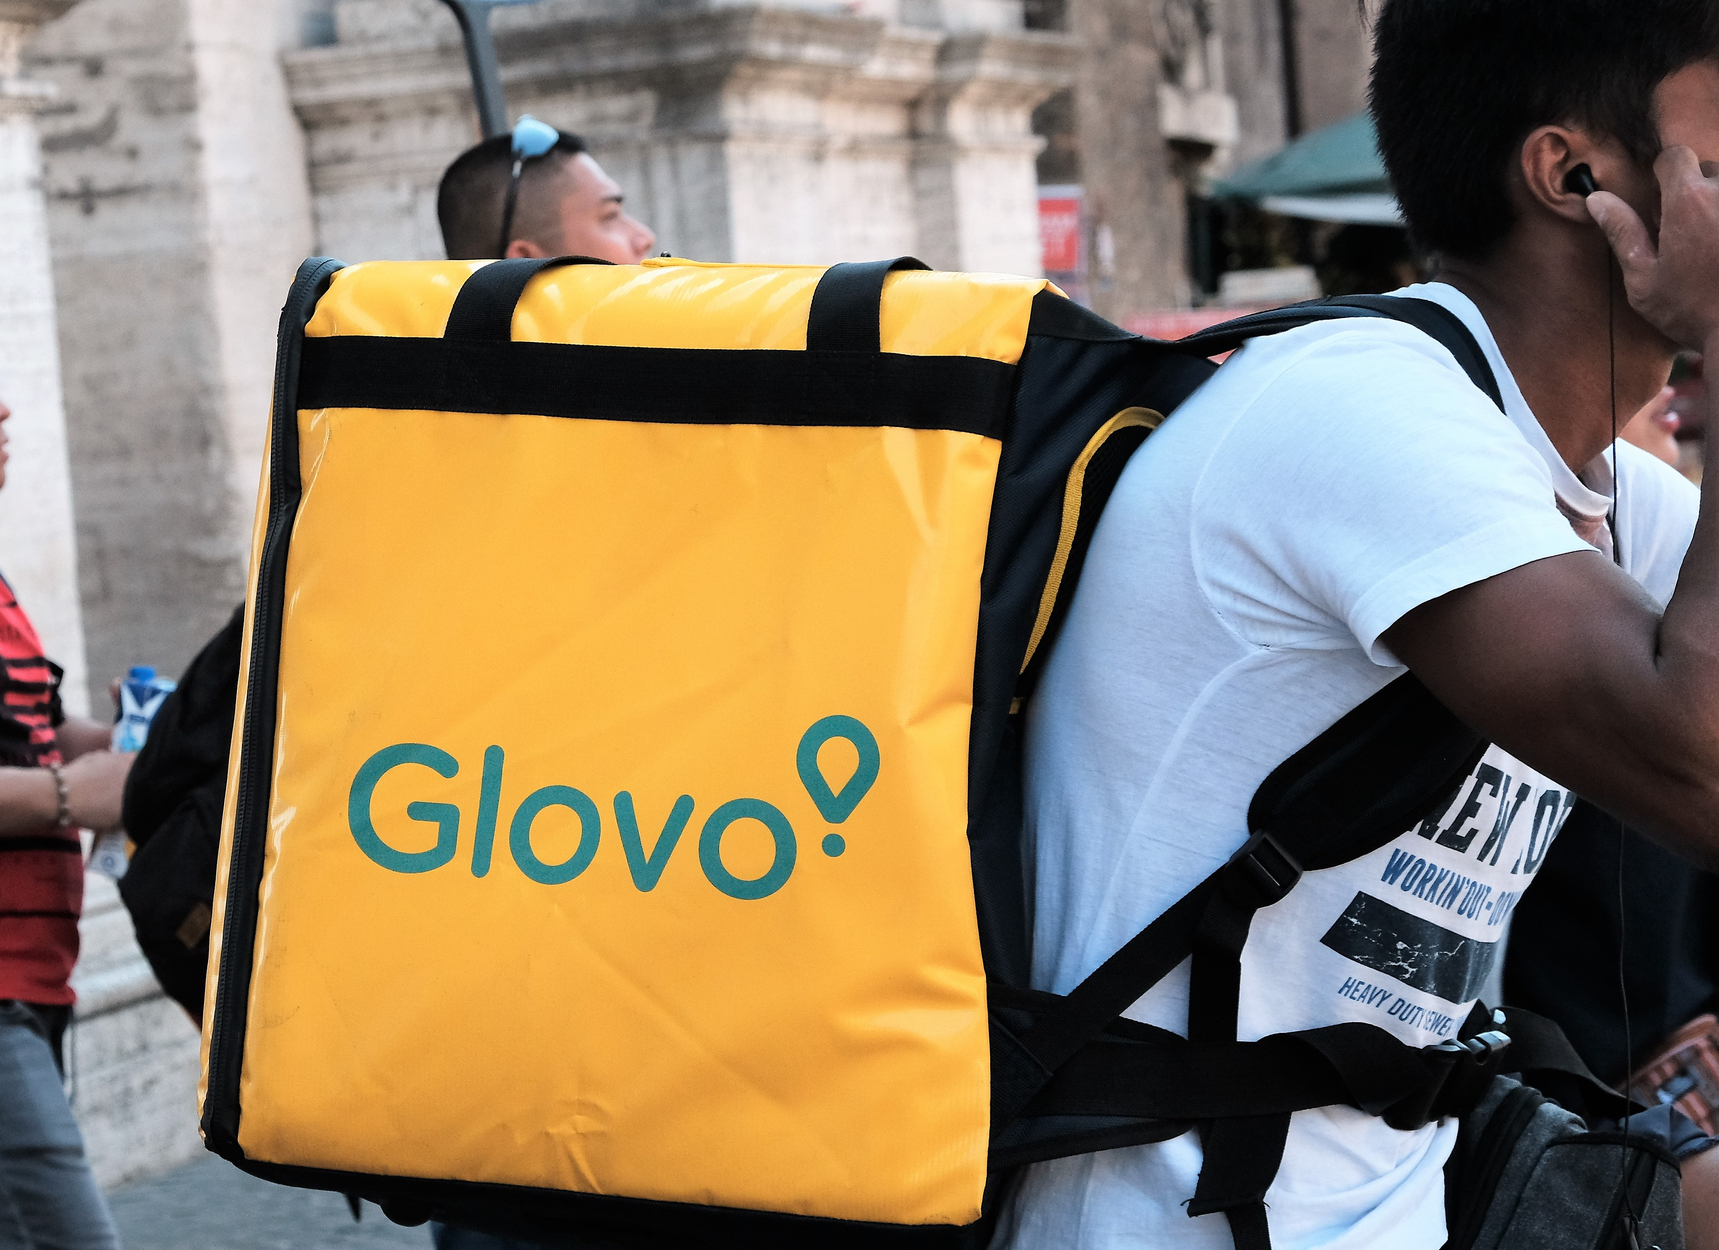 Ayuso encarga a Glovo el reparto de comida a personas vulnerables, entre ellas los repartidores de Glovo | El Mundo Today